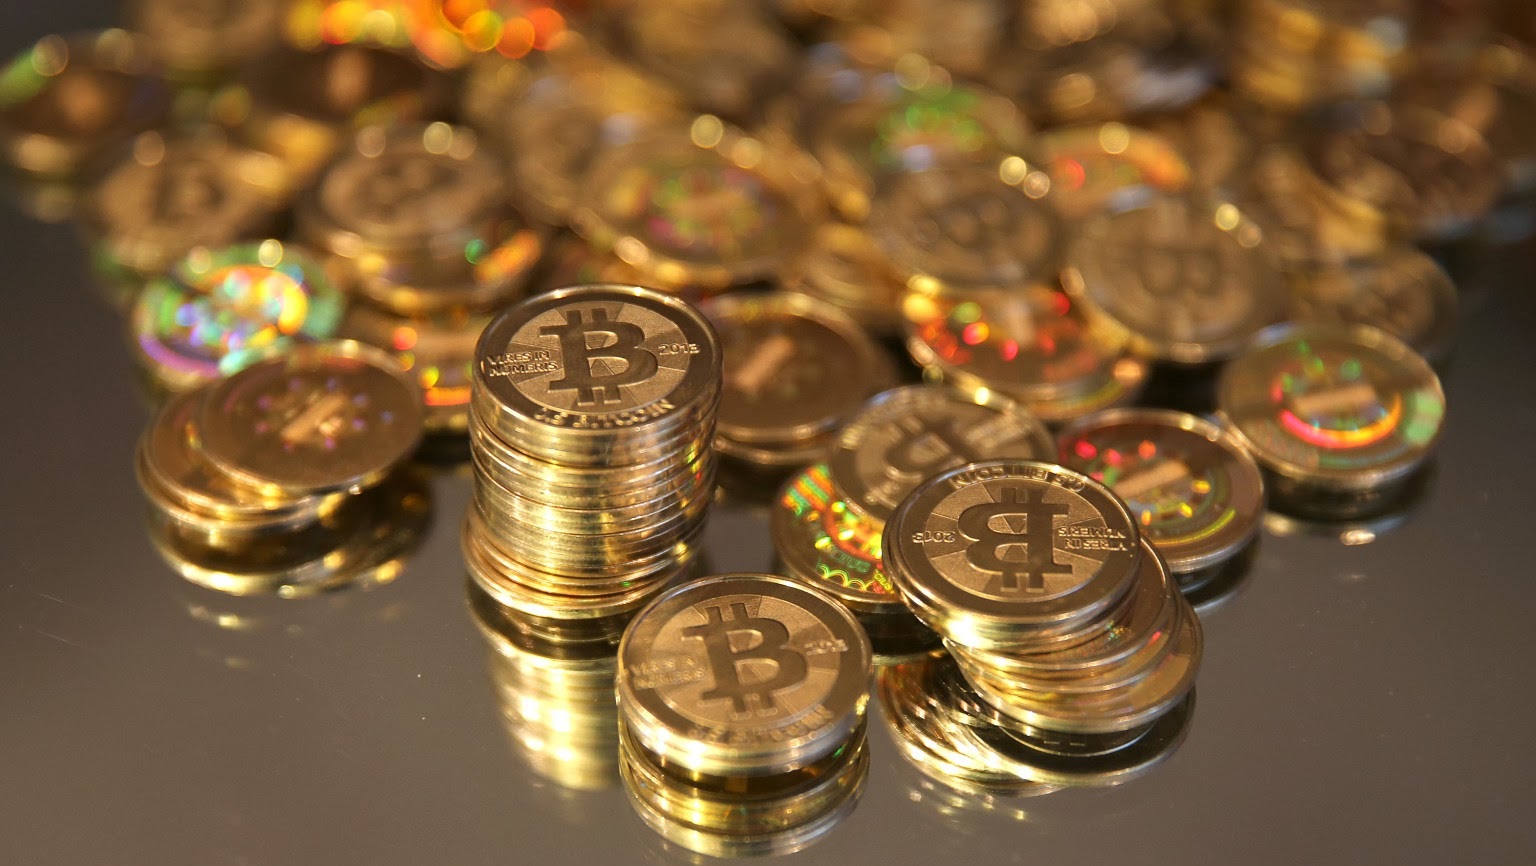 Il Bitcoin, la moneta (virtuale) del futuro